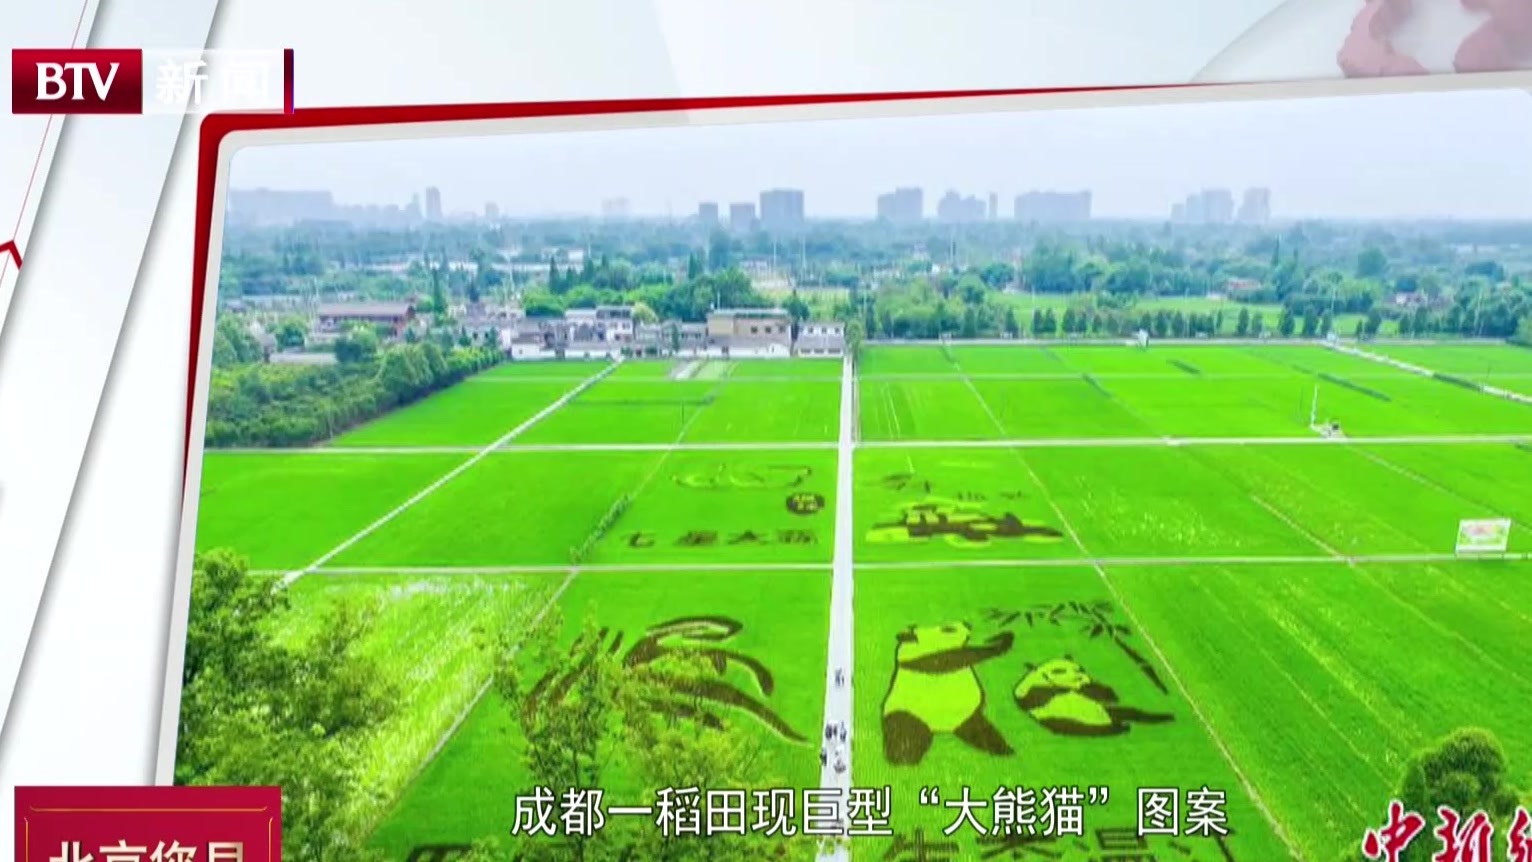 成都一稻田现巨型“大熊猫”图案